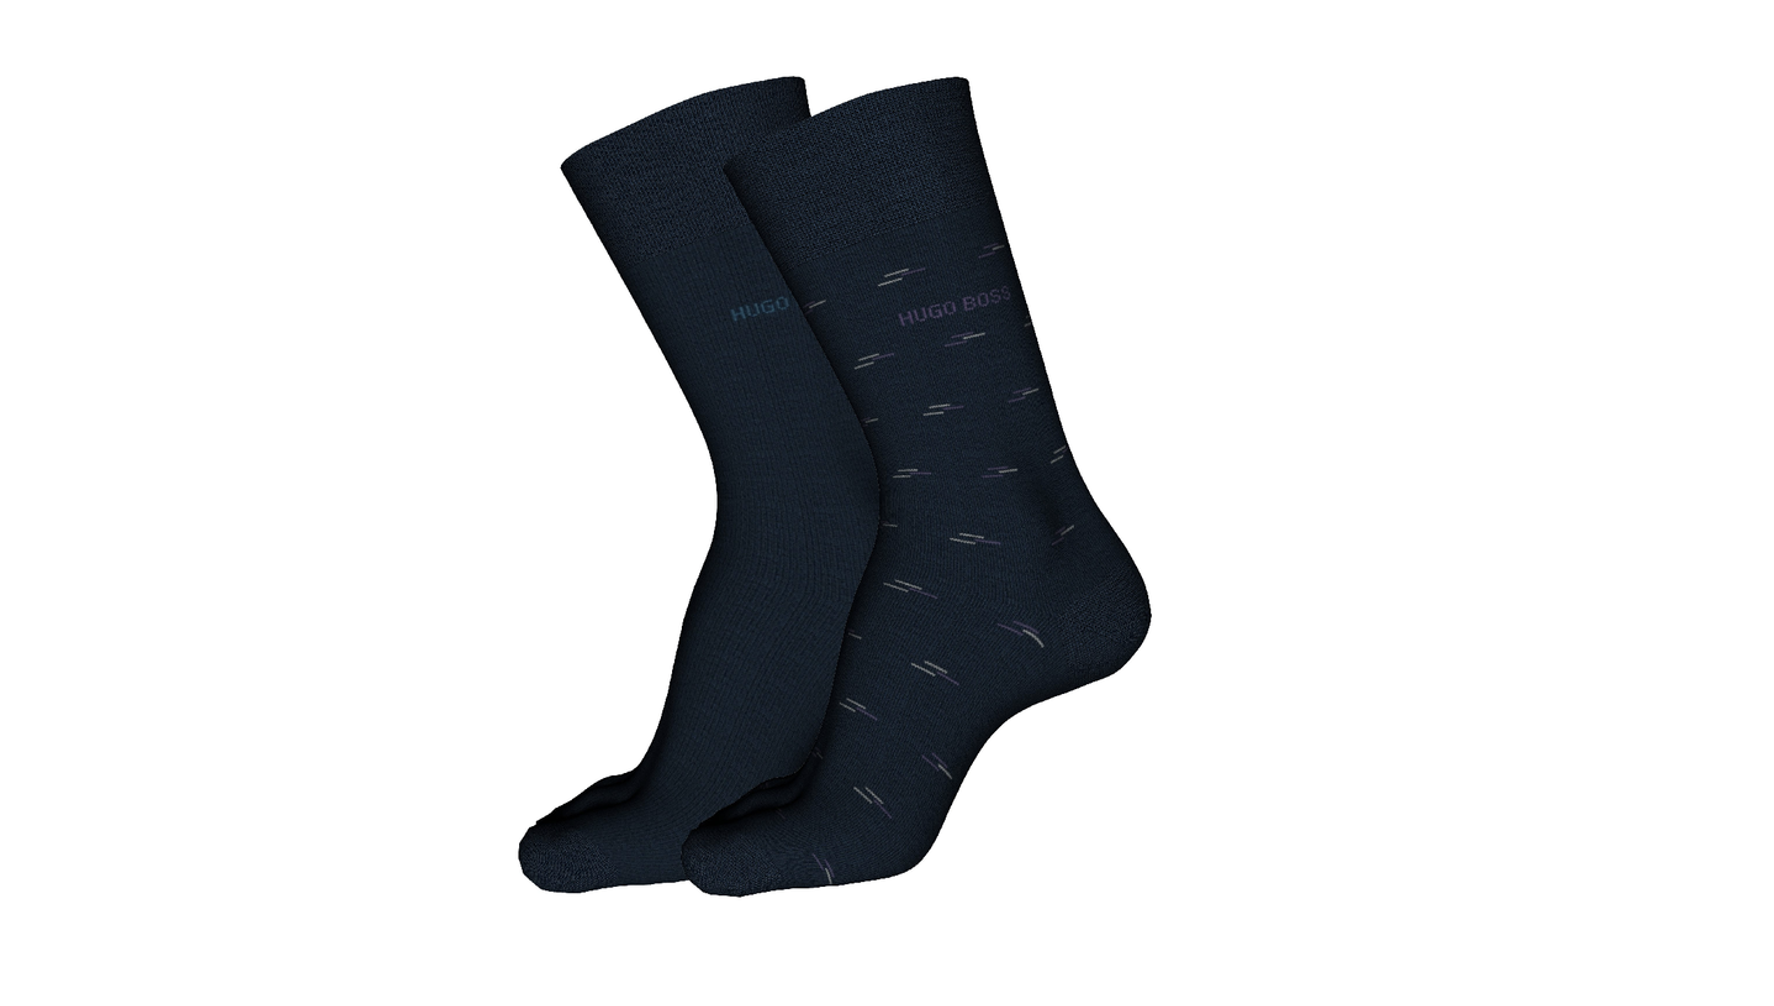 Hugo Boss patterned Socks